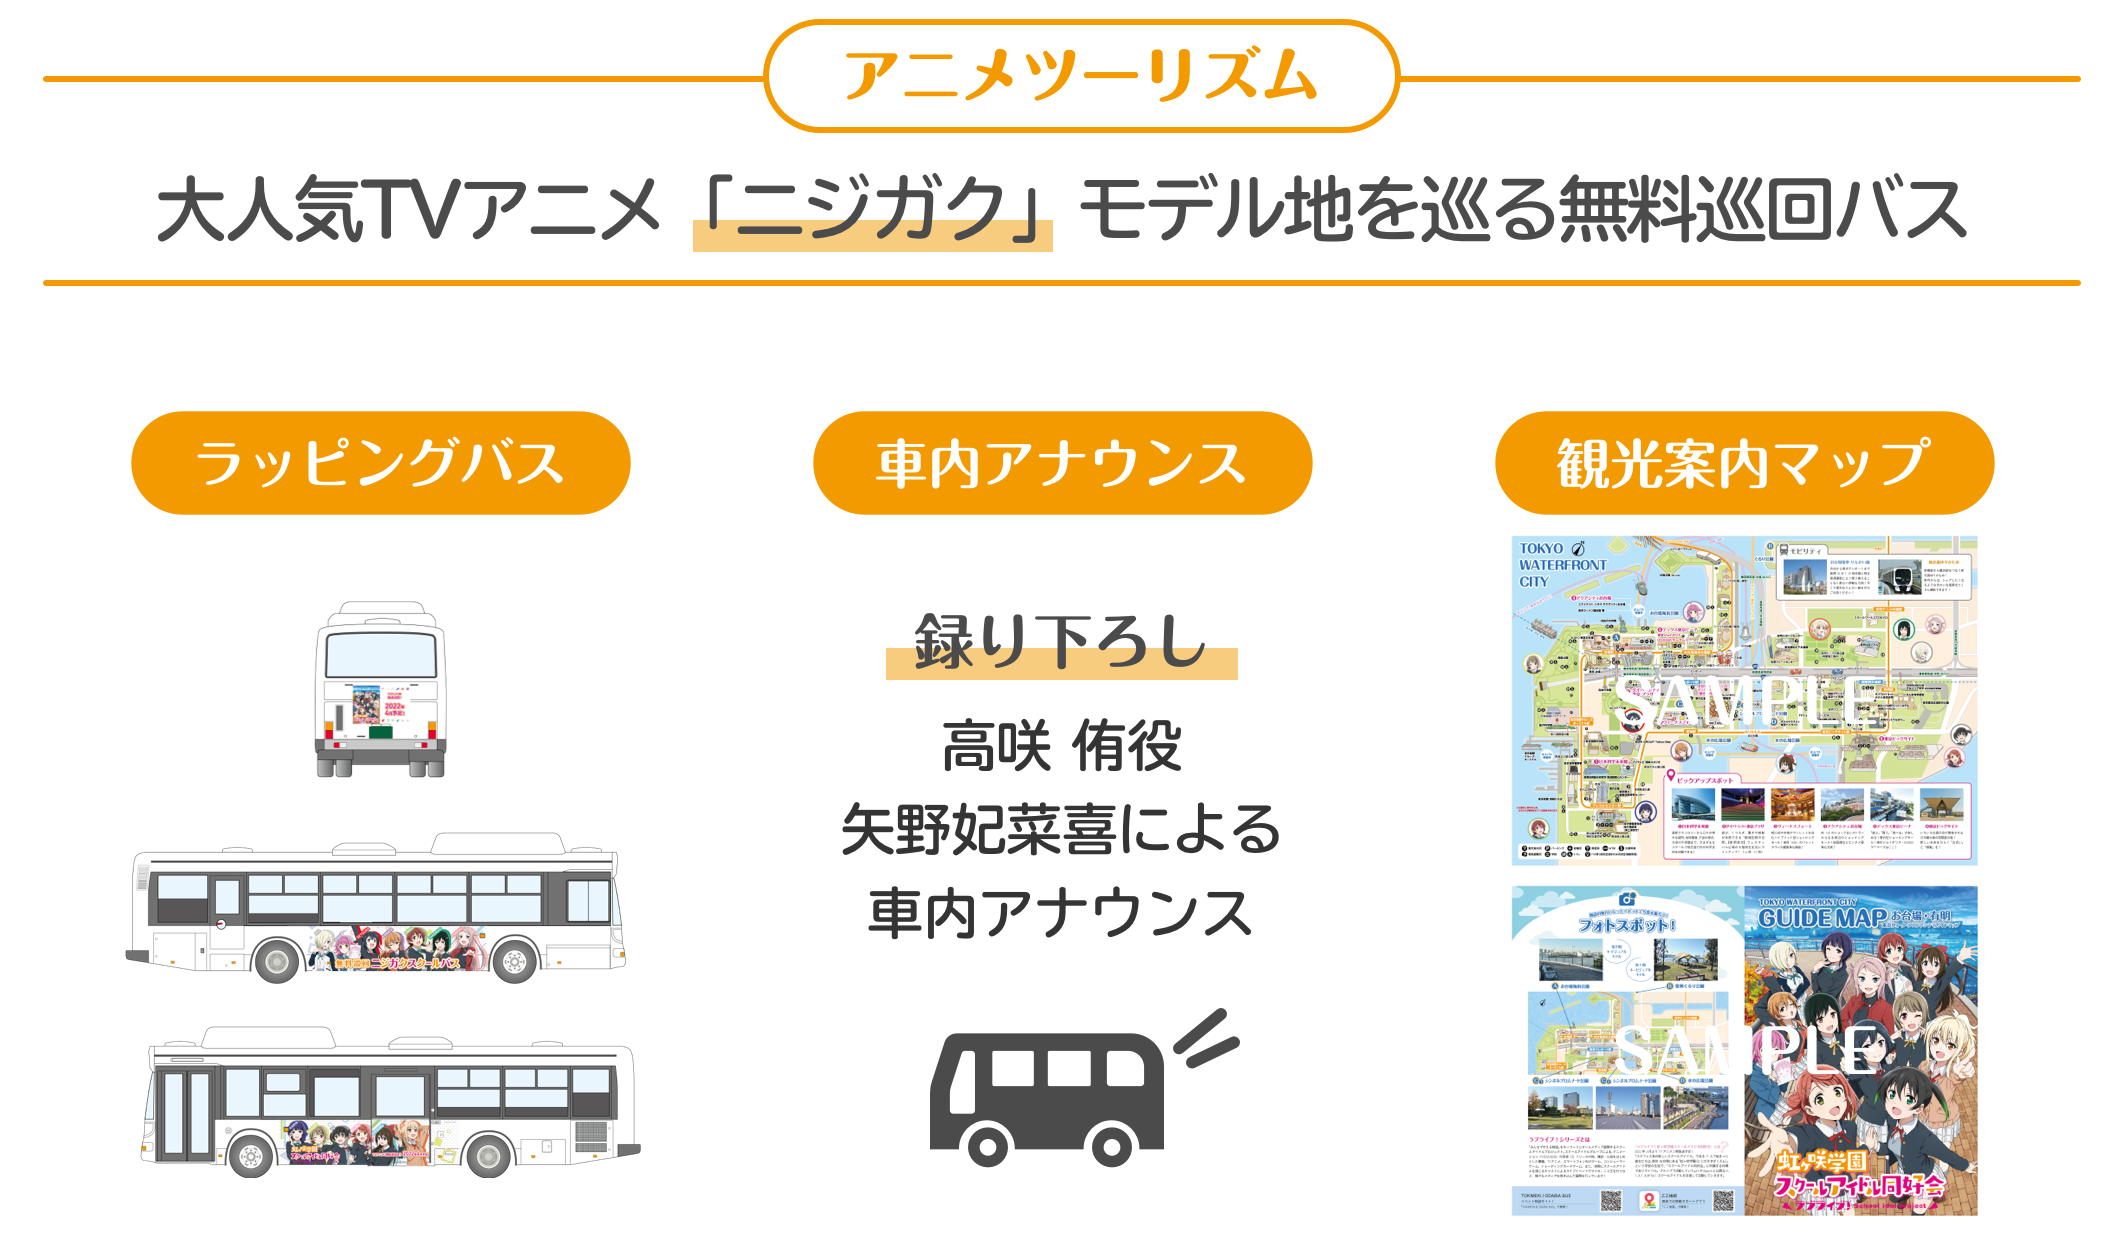 東京臨海副都心エリアへの誘客および周遊促進のためのアニメツーリズム「TOKIMEKI♪ODAIBA BUS～With You～」実証運行を実施のサブ画像3